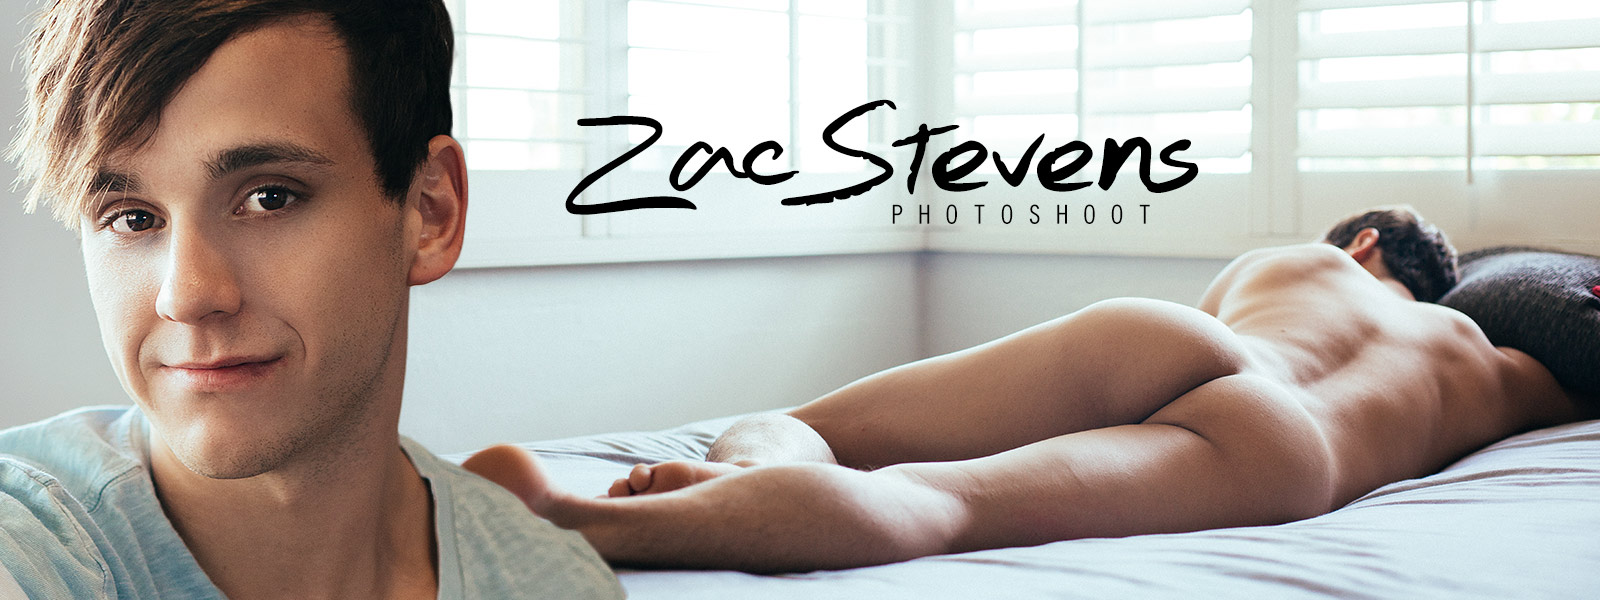 Zac Stevens Photoshoot 